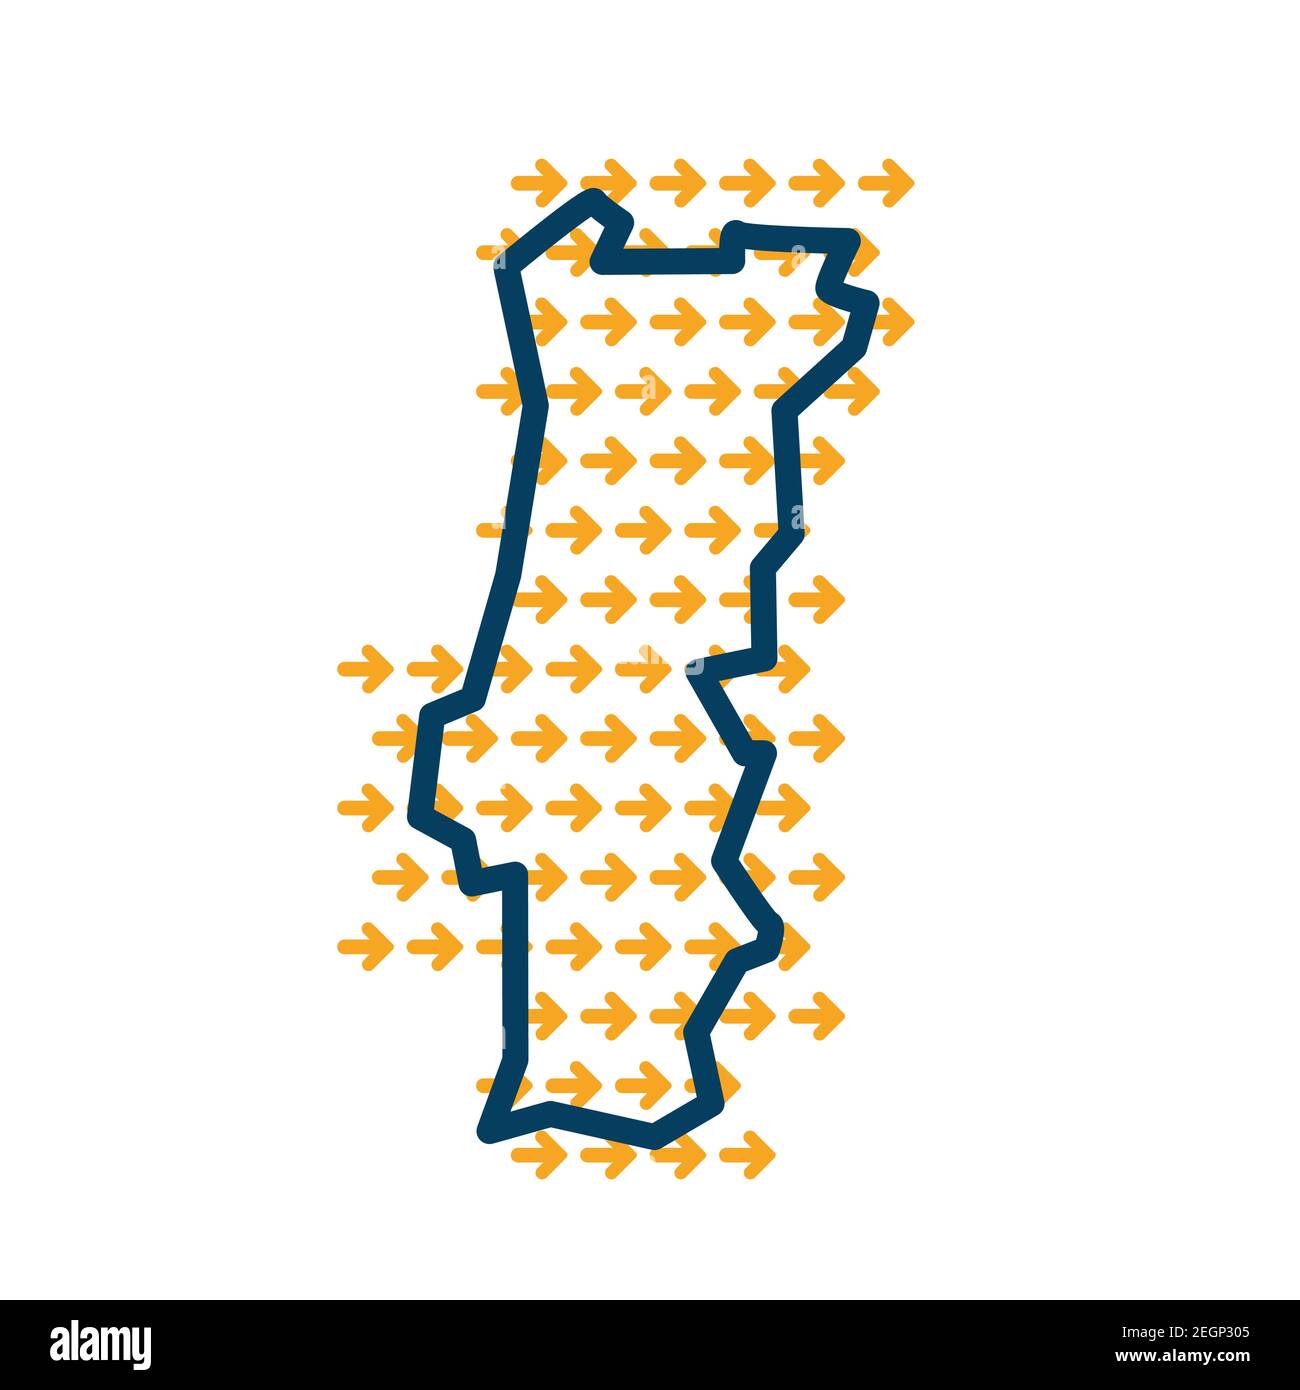 Portogallo semplice mappa con frecce di direzione gialle. Illustrazione Vettoriale